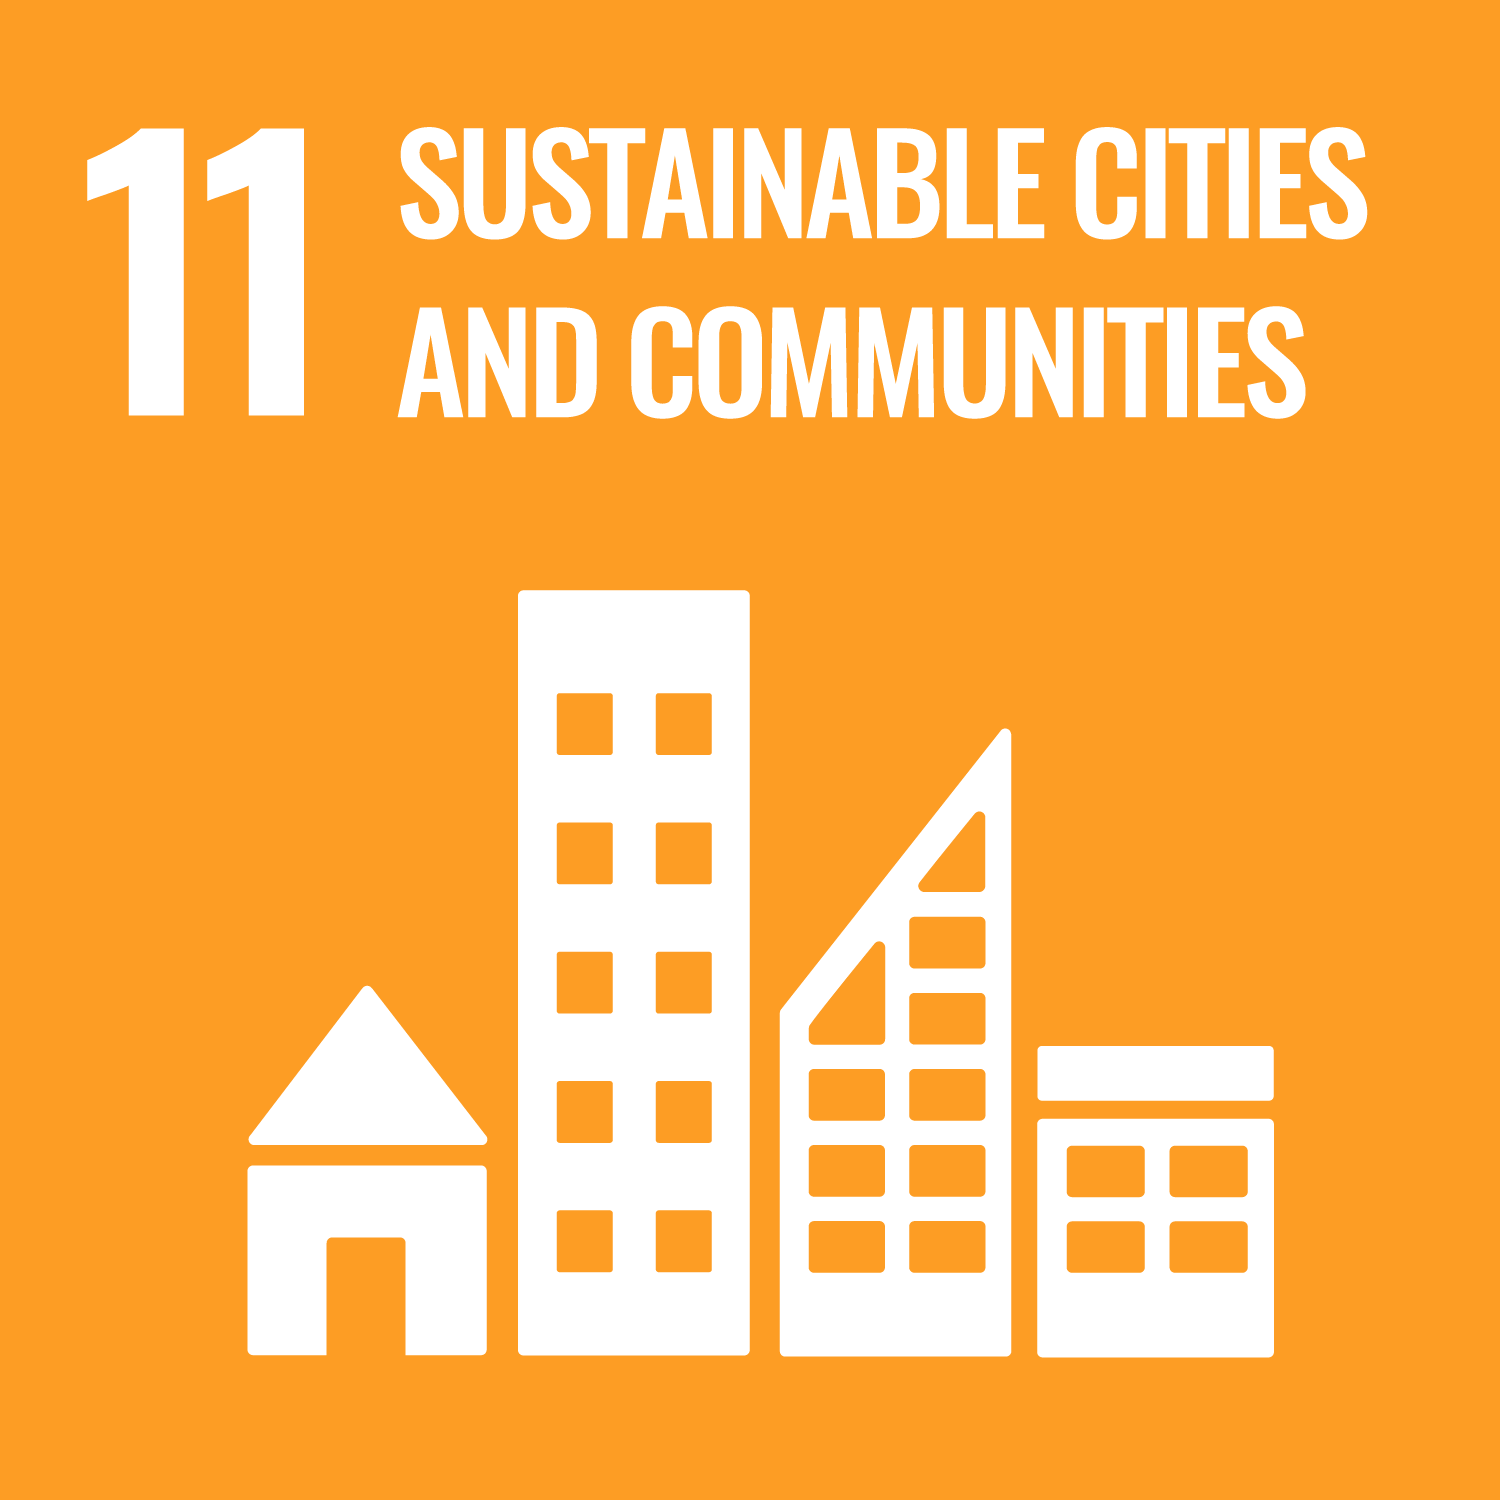 Sustainable cities and communities / Ciudades y comunidades sostenibles